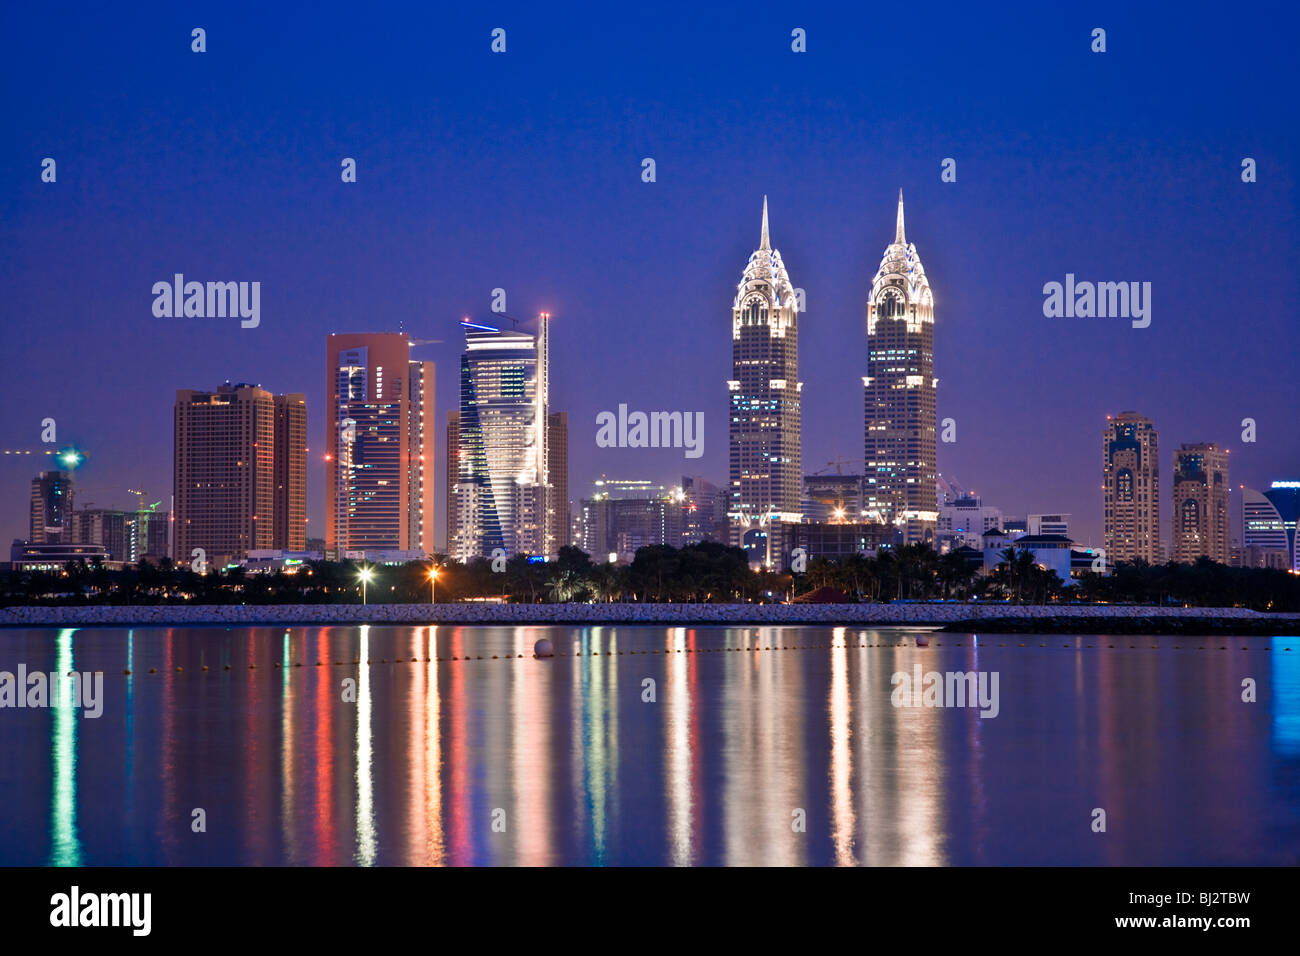 Dämmerung Blick über Dubai nach Palm Island Jumeirah mit zwei Kopien des Chrysler Building in New York im Hintergrund. Stockfoto